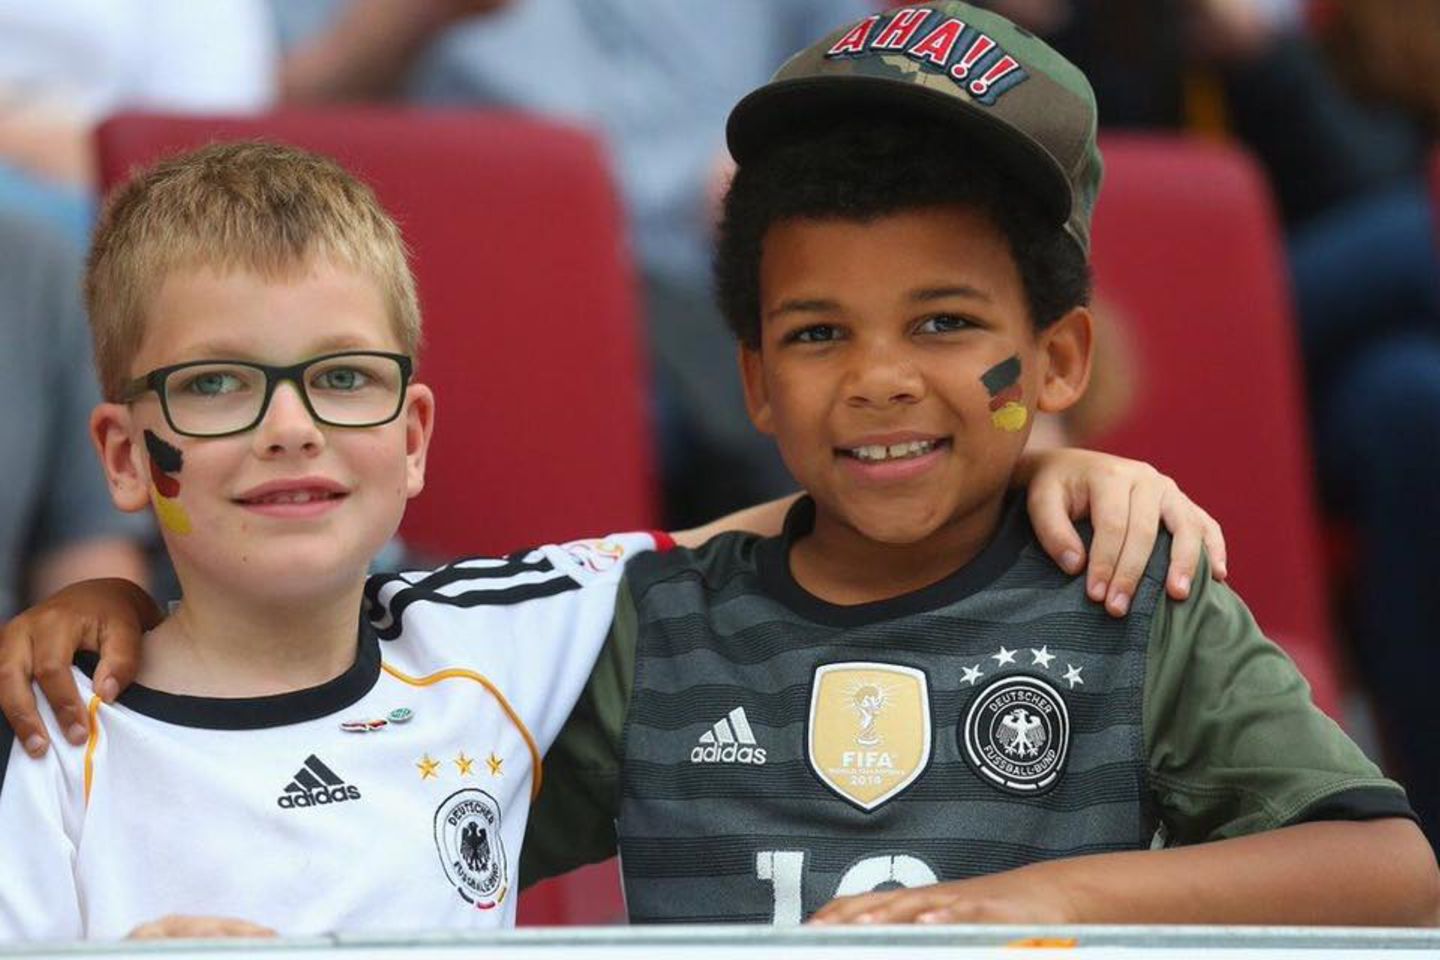 Mario Götze wünscht allen eine friedvolle EM und postet dieses entzückende Foto von zwei kleinen Jungs, die sich sehr auf das Turnier freuen!